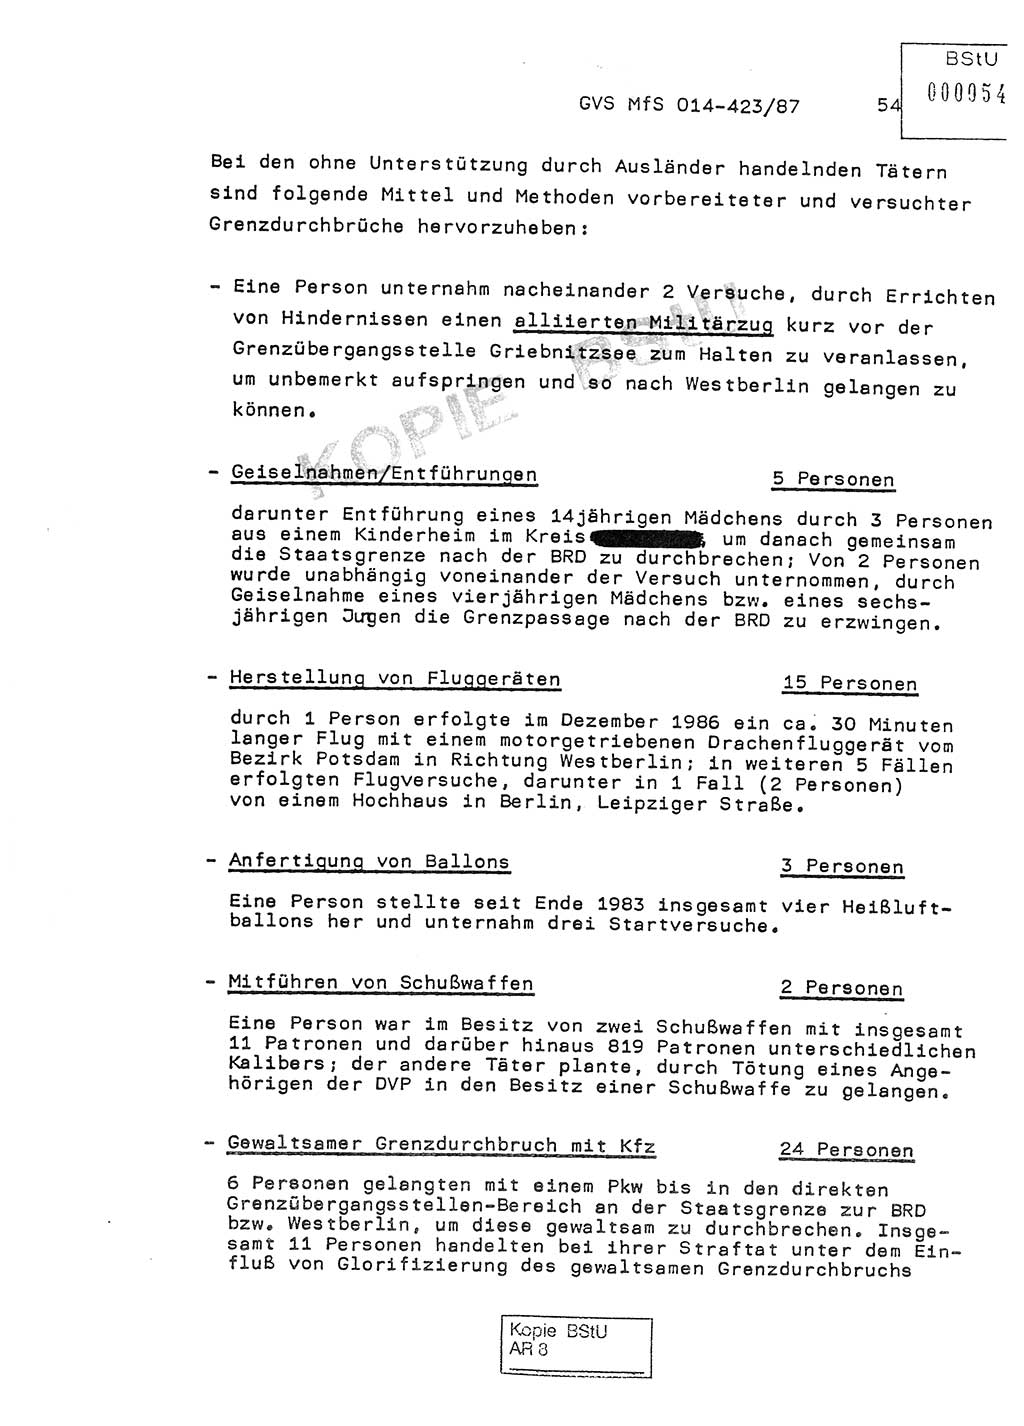 Jahresbericht der Hauptabteilung (HA) Ⅸ 1986, Einschätzung der Wirksamkeit der Untersuchungsarbeit im Jahre 1986, Ministerium für Staatssicherheit (MfS) der Deutschen Demokratischen Republik (DDR), Hauptabteilung Ⅸ, Geheime Verschlußsache (GVS) o014-423/87, Berlin 1987, Seite 54 (Einsch. MfS DDR HA Ⅸ GVS o014-423/87 1986, S. 54)